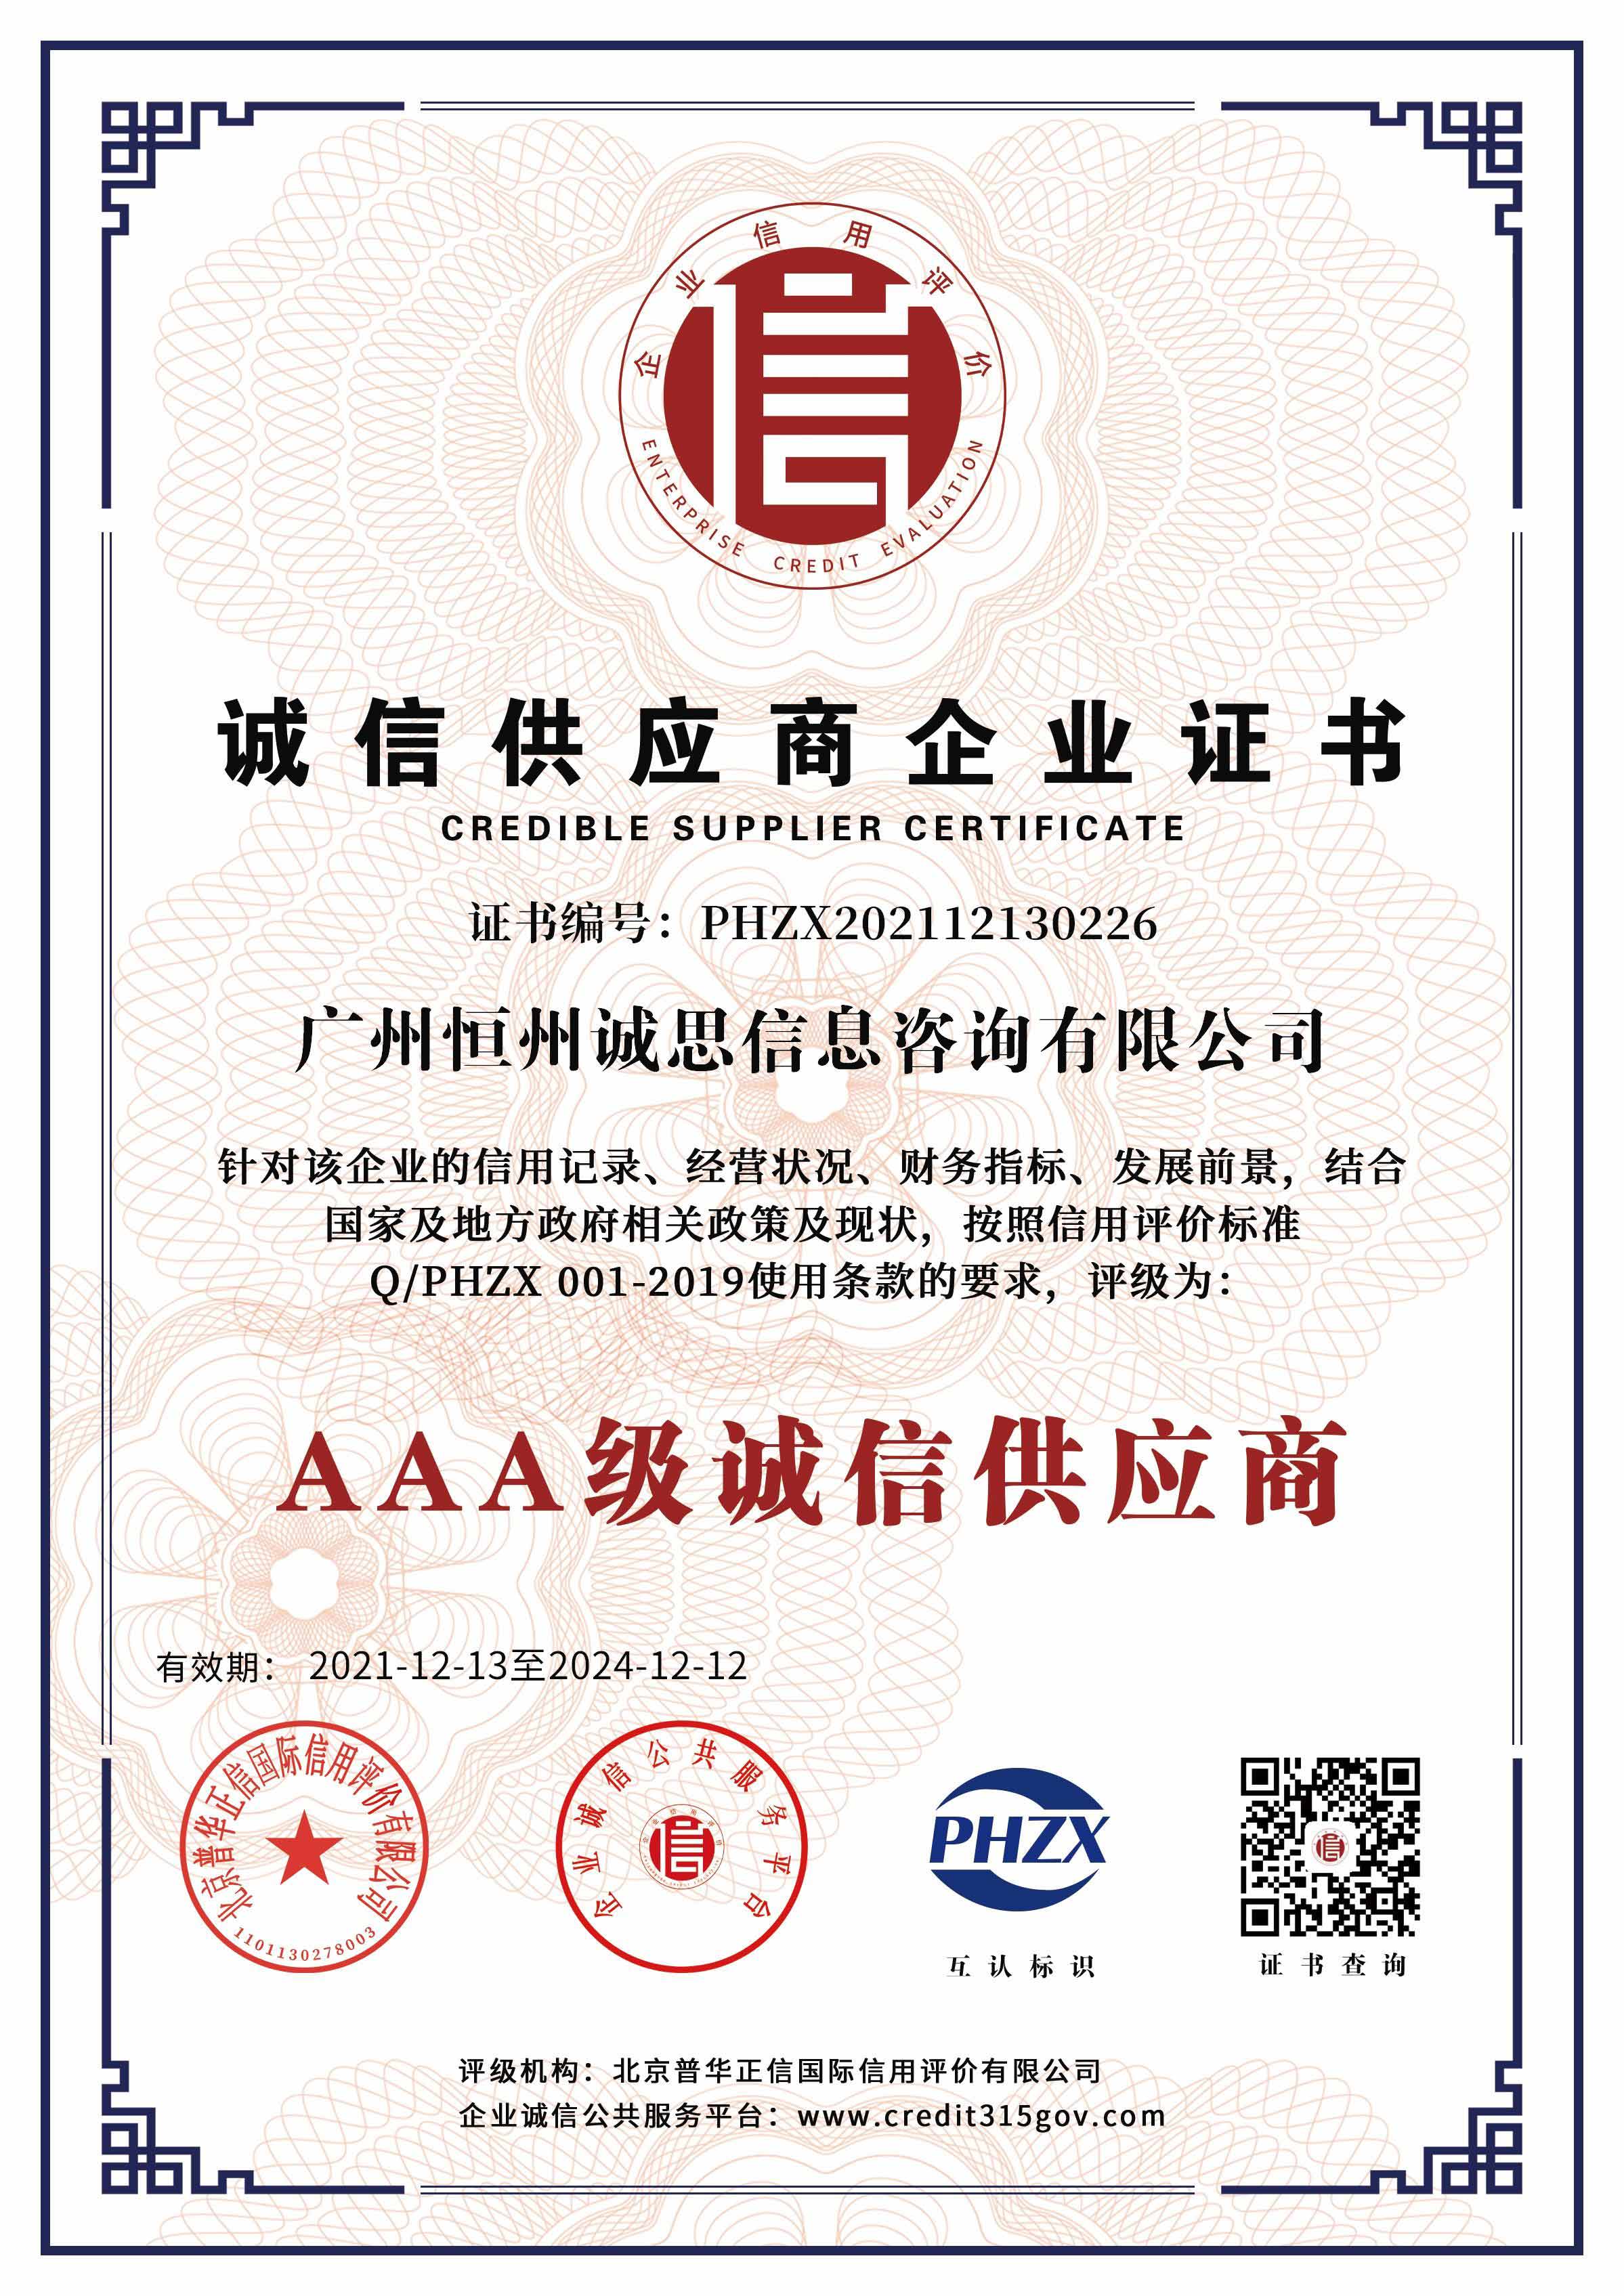 广州恒州诚思信息咨询有限公司-AAA级诚信供应商证书